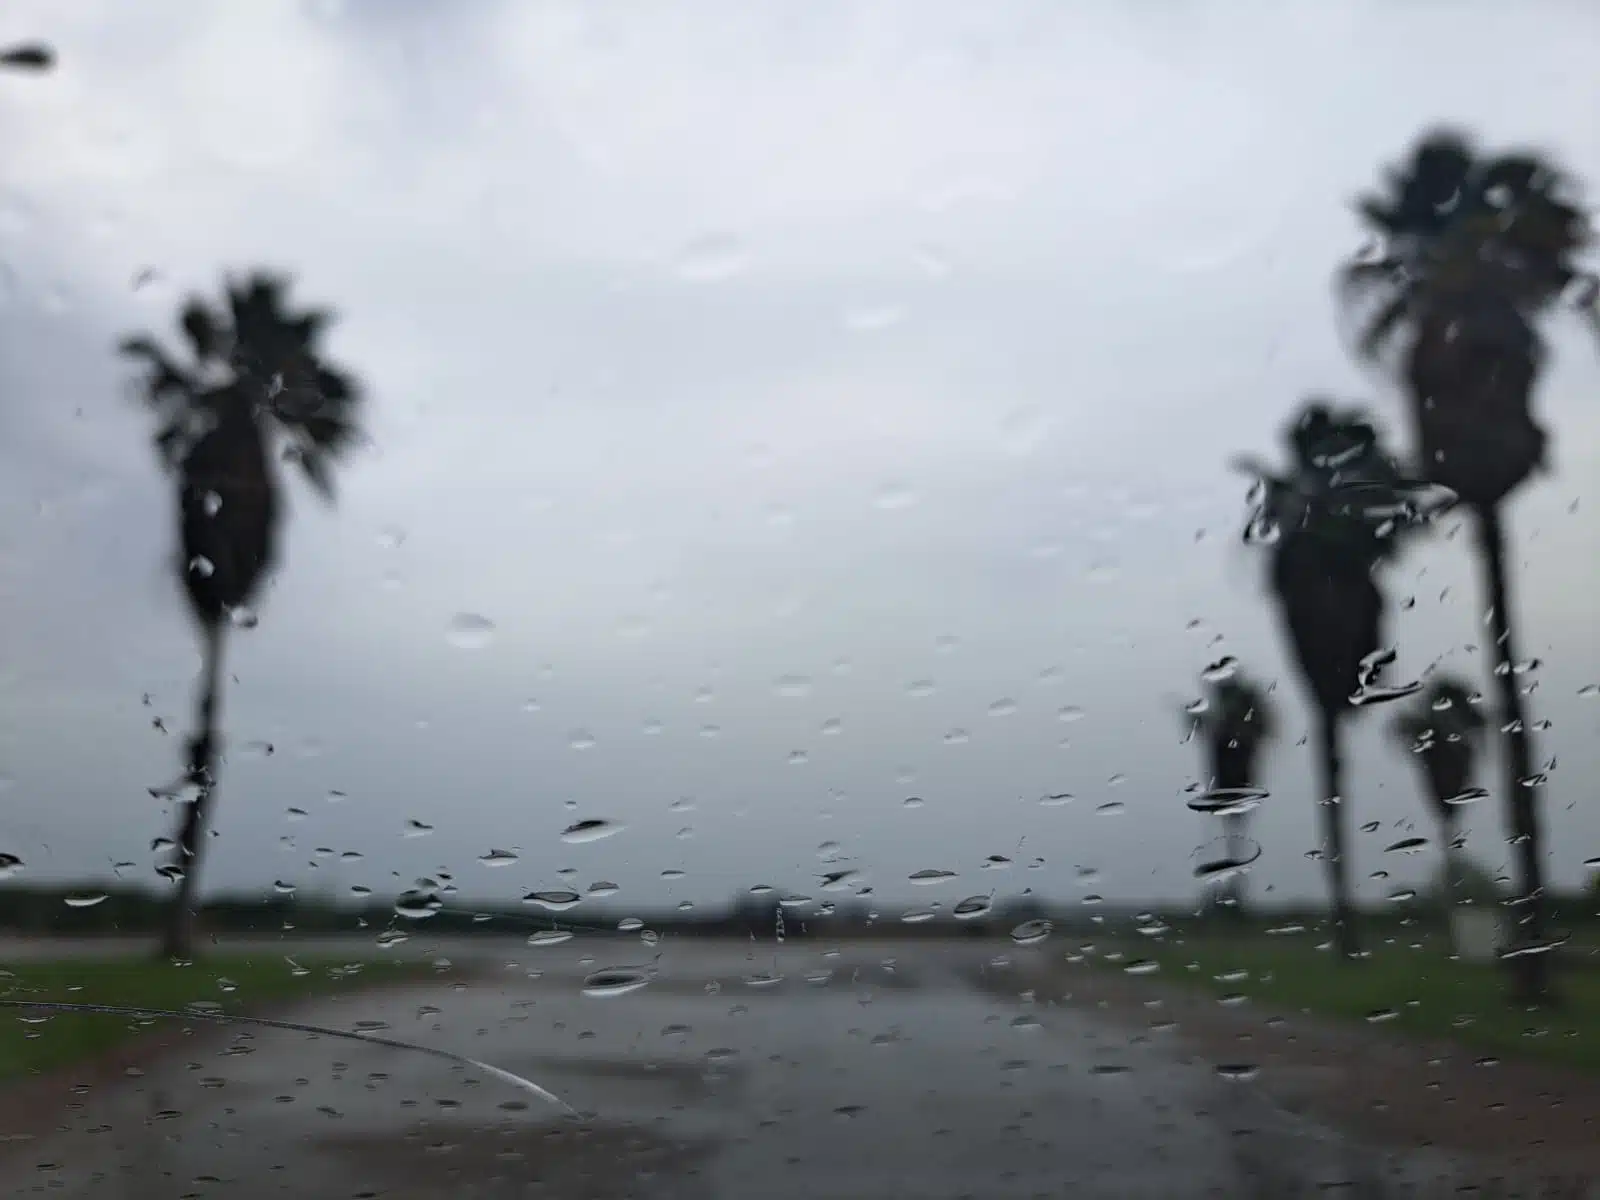 Cristal de un carro con gotas de lluvia. Se ve cielo nublado en una calle pavimentada rodeada de palmeras en Los Mochis